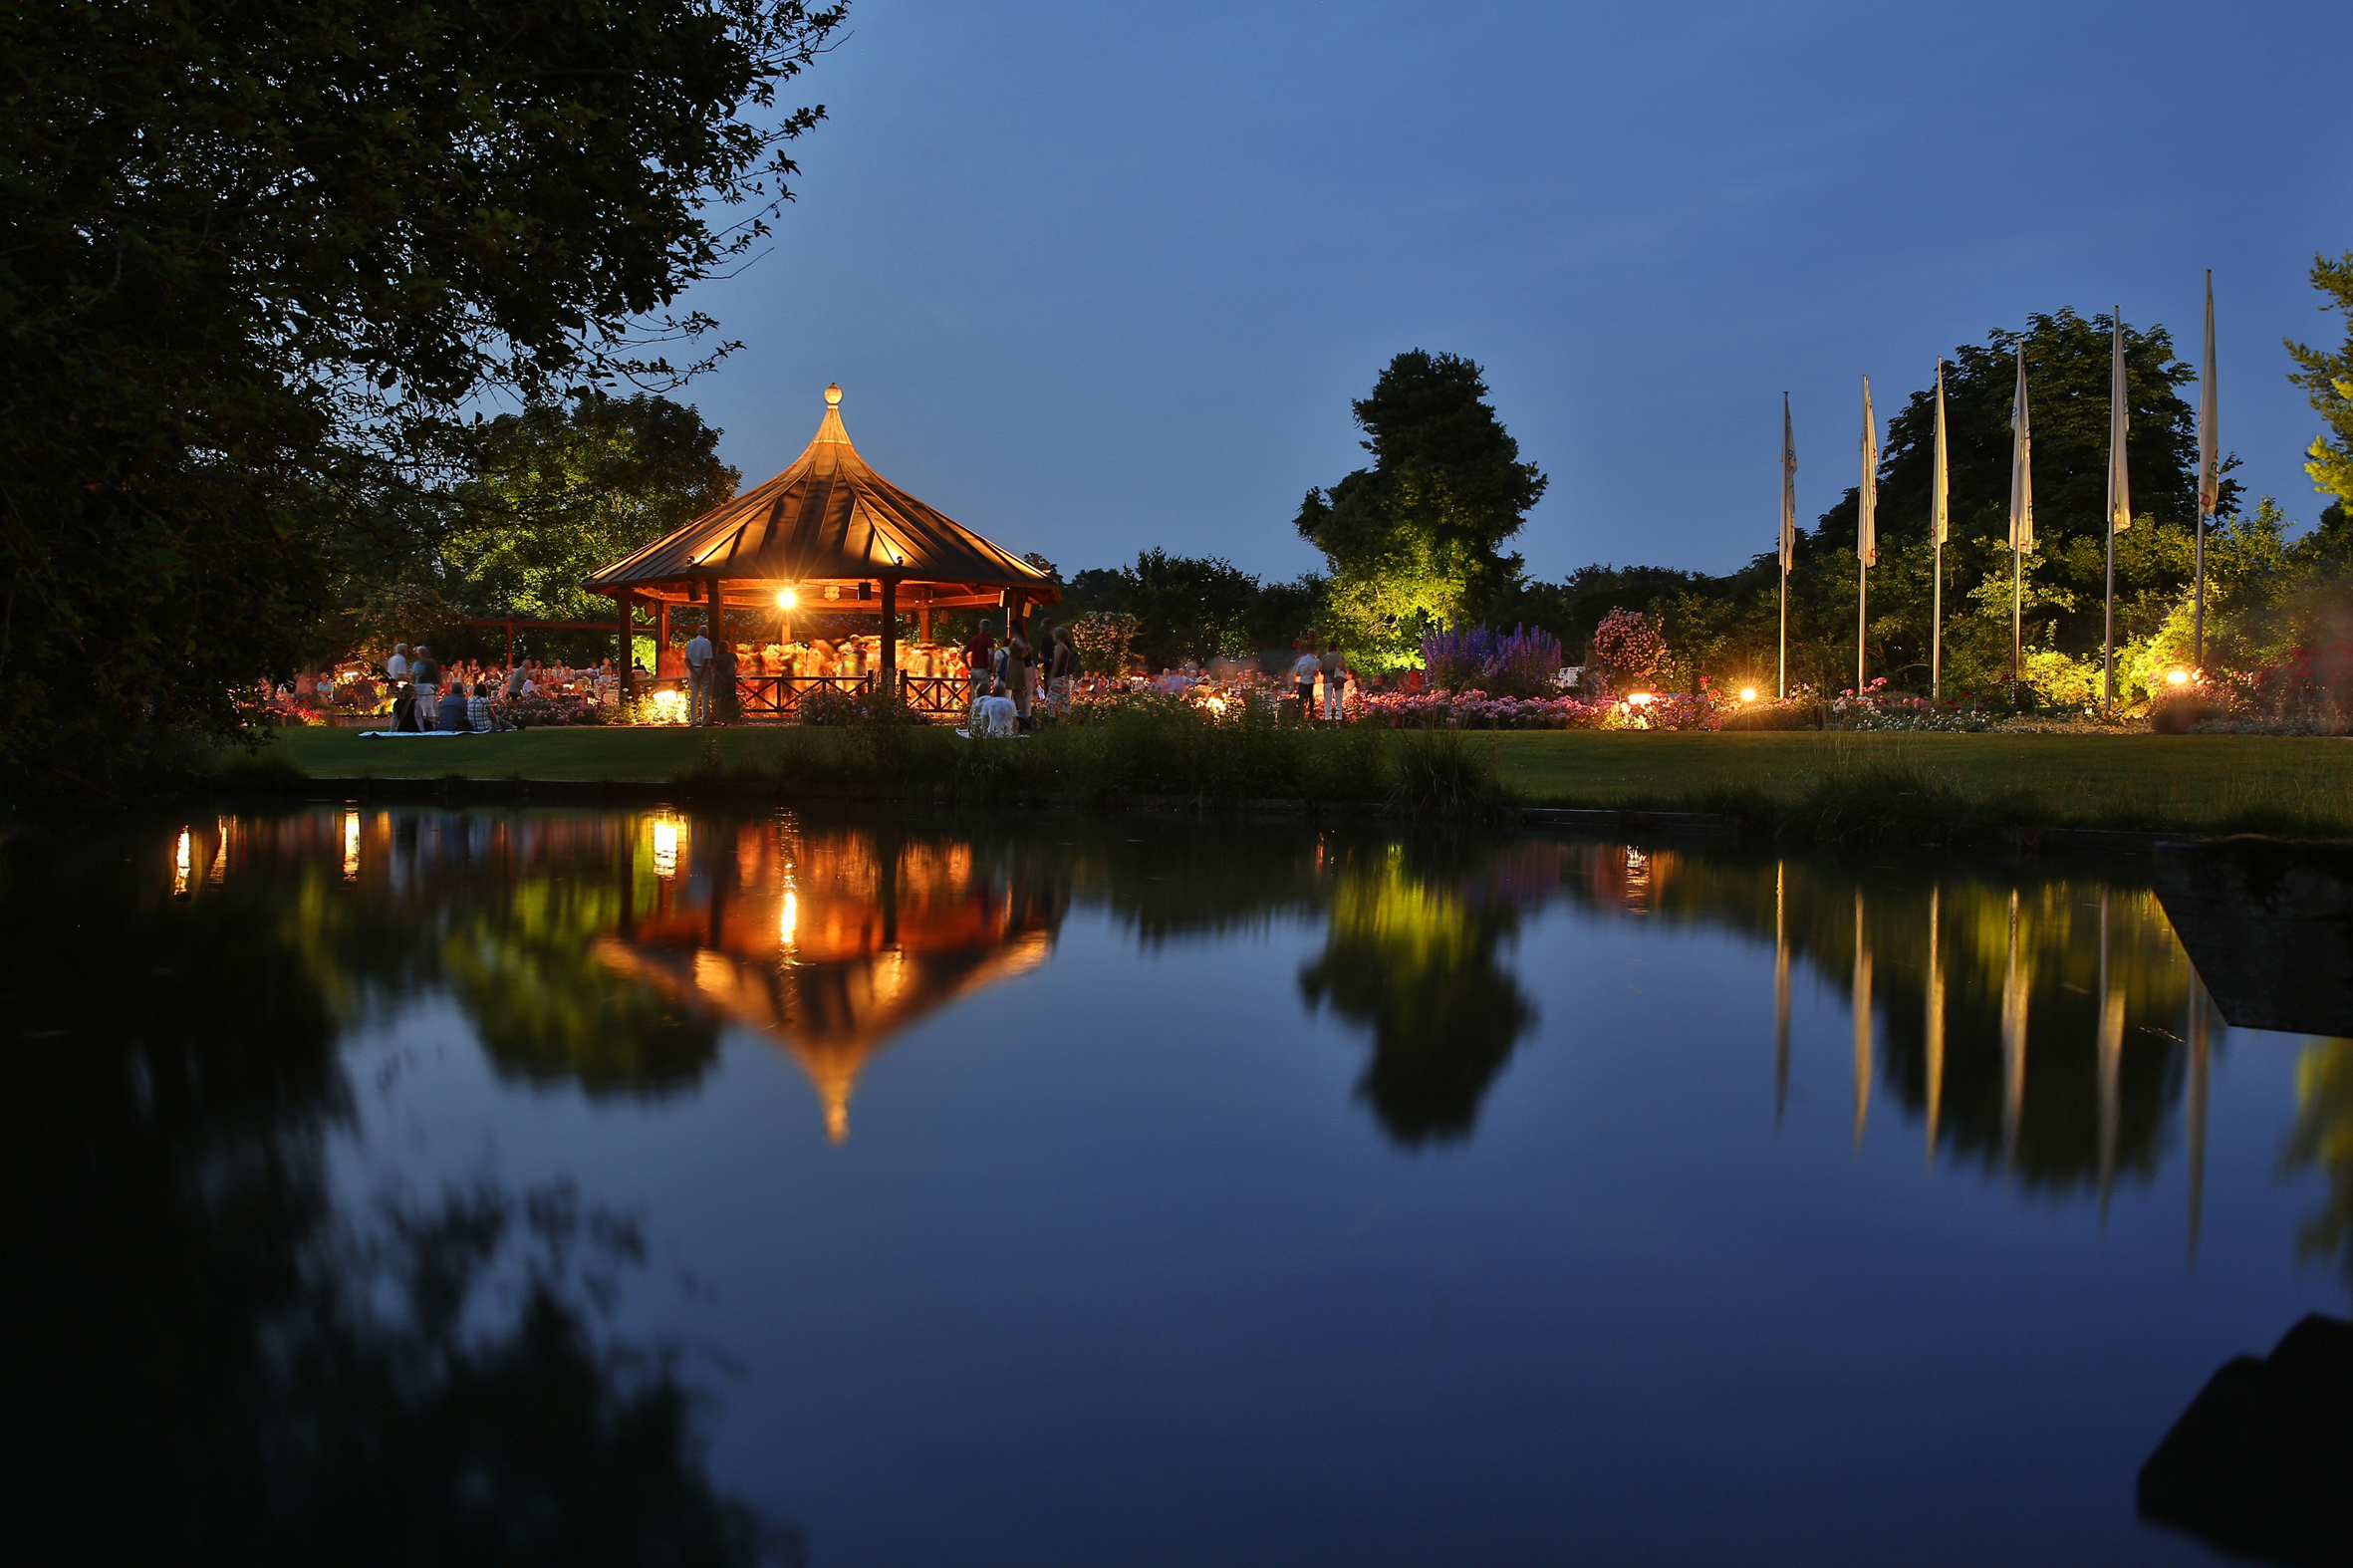 Ein Pavillon im Botanischen Garten ist beleuchtet. Es ist Abend, der Himmel ist dunkelblau. Der Pavillon und die umliegenden Bäume spiegeln sich in einem kleinen See